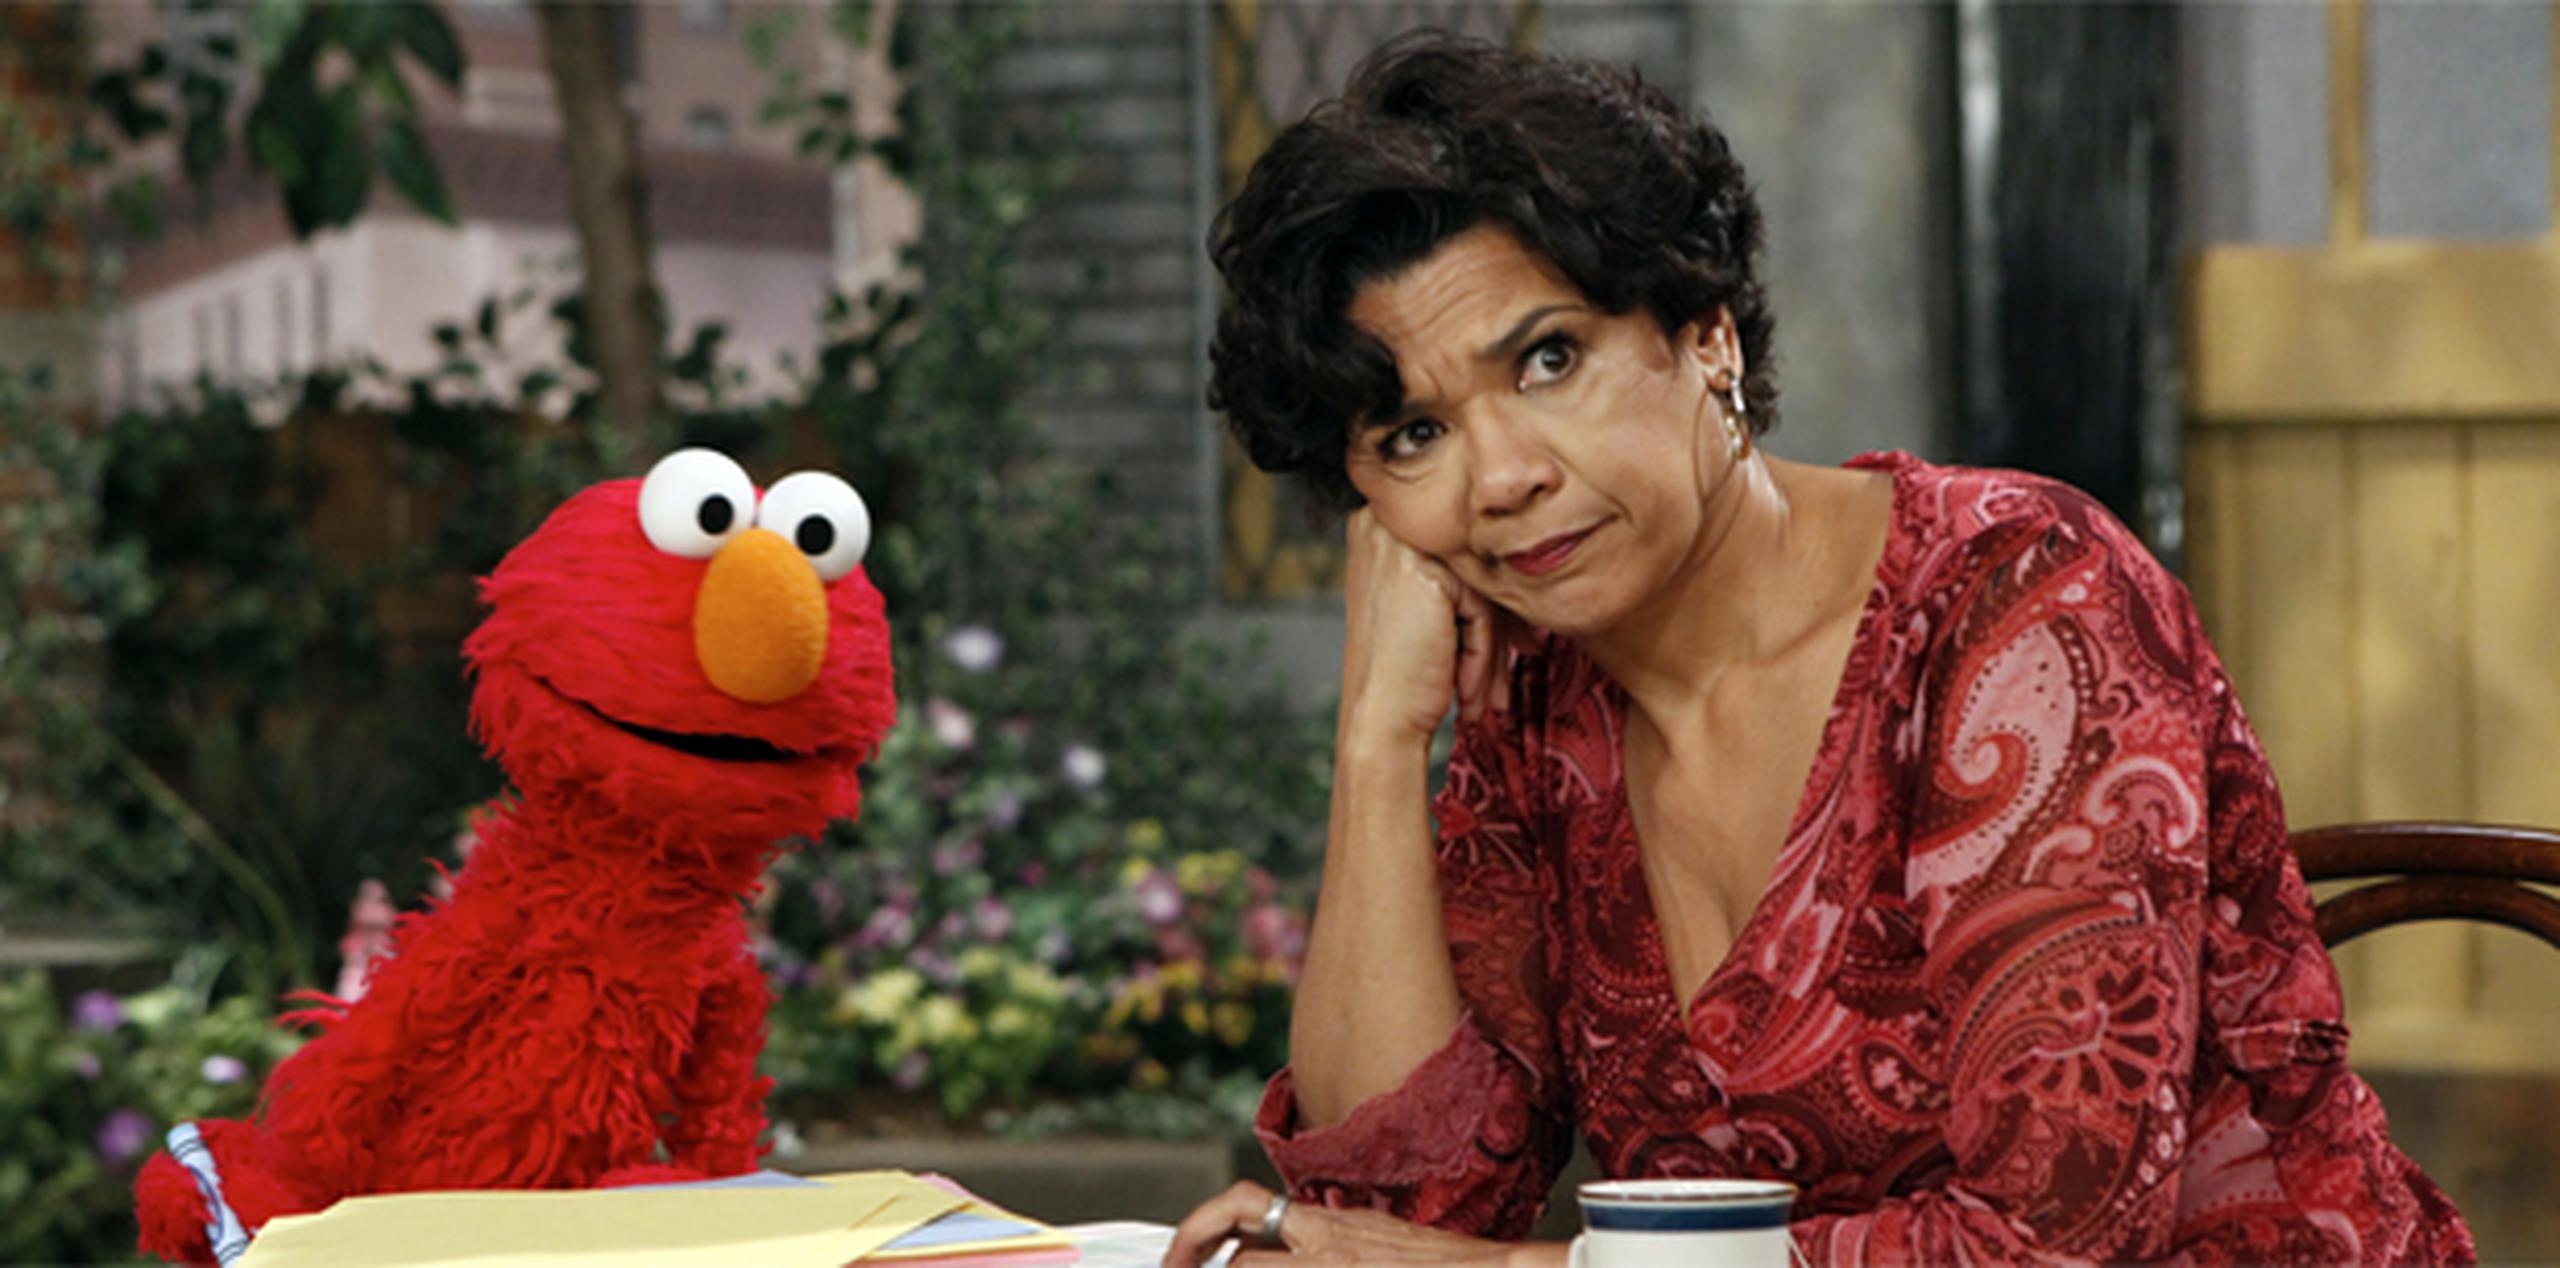 La actriz puertorriqueña Sonia Manzano apareció por primera vez en “Sesame Street” en 1971.